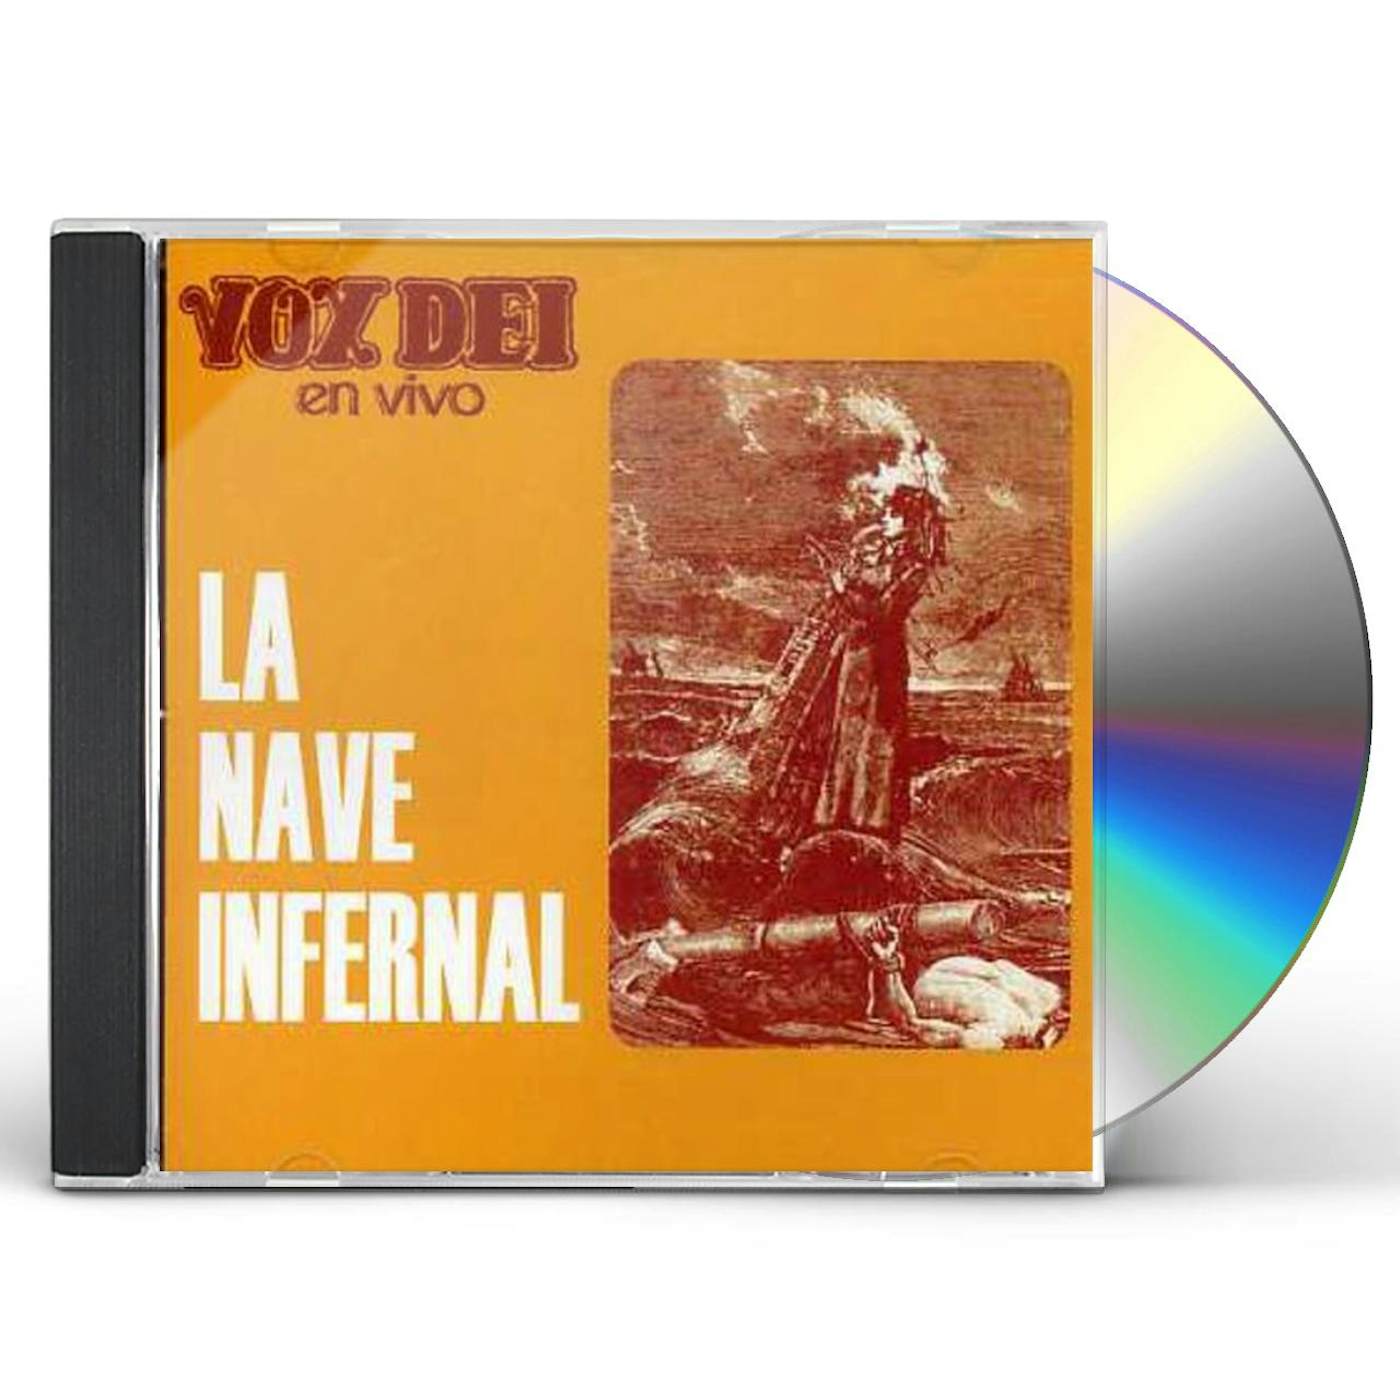 Vox Dei NAVE INFERNAL CD